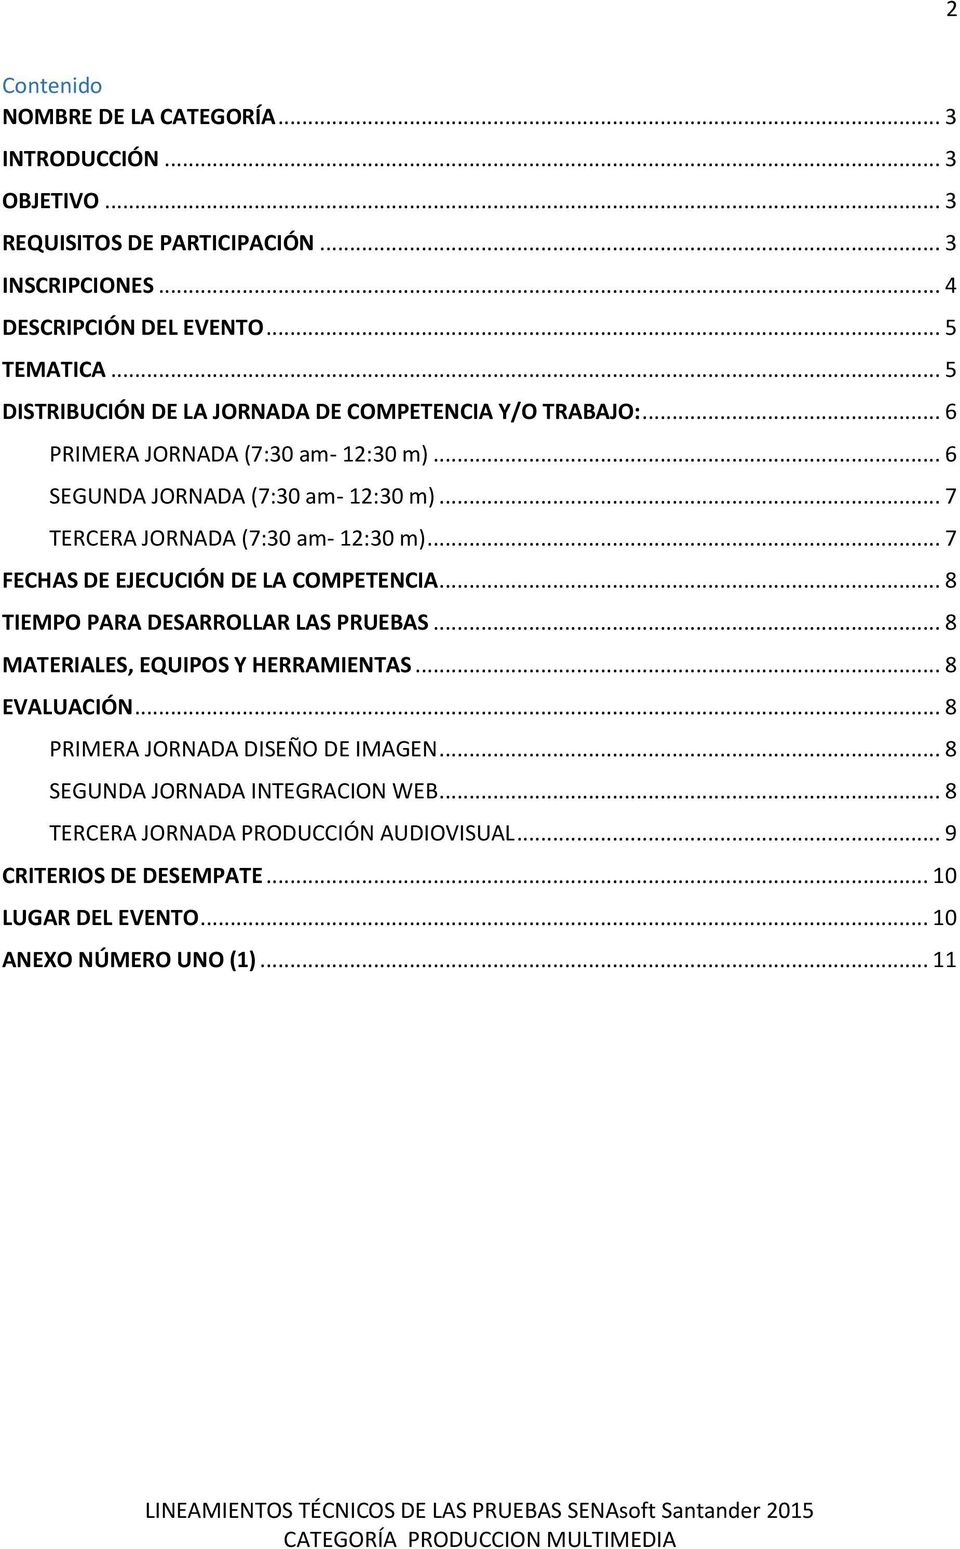 .. 7 TERCERA JORNADA (7:30 am- 12:30 m)... 7 FECHAS DE EJECUCIÓN DE LA COMPETENCIA... 8 TIEMPO PARA DESARROLLAR LAS PRUEBAS... 8 MATERIALES, EQUIPOS Y HERRAMIENTAS.